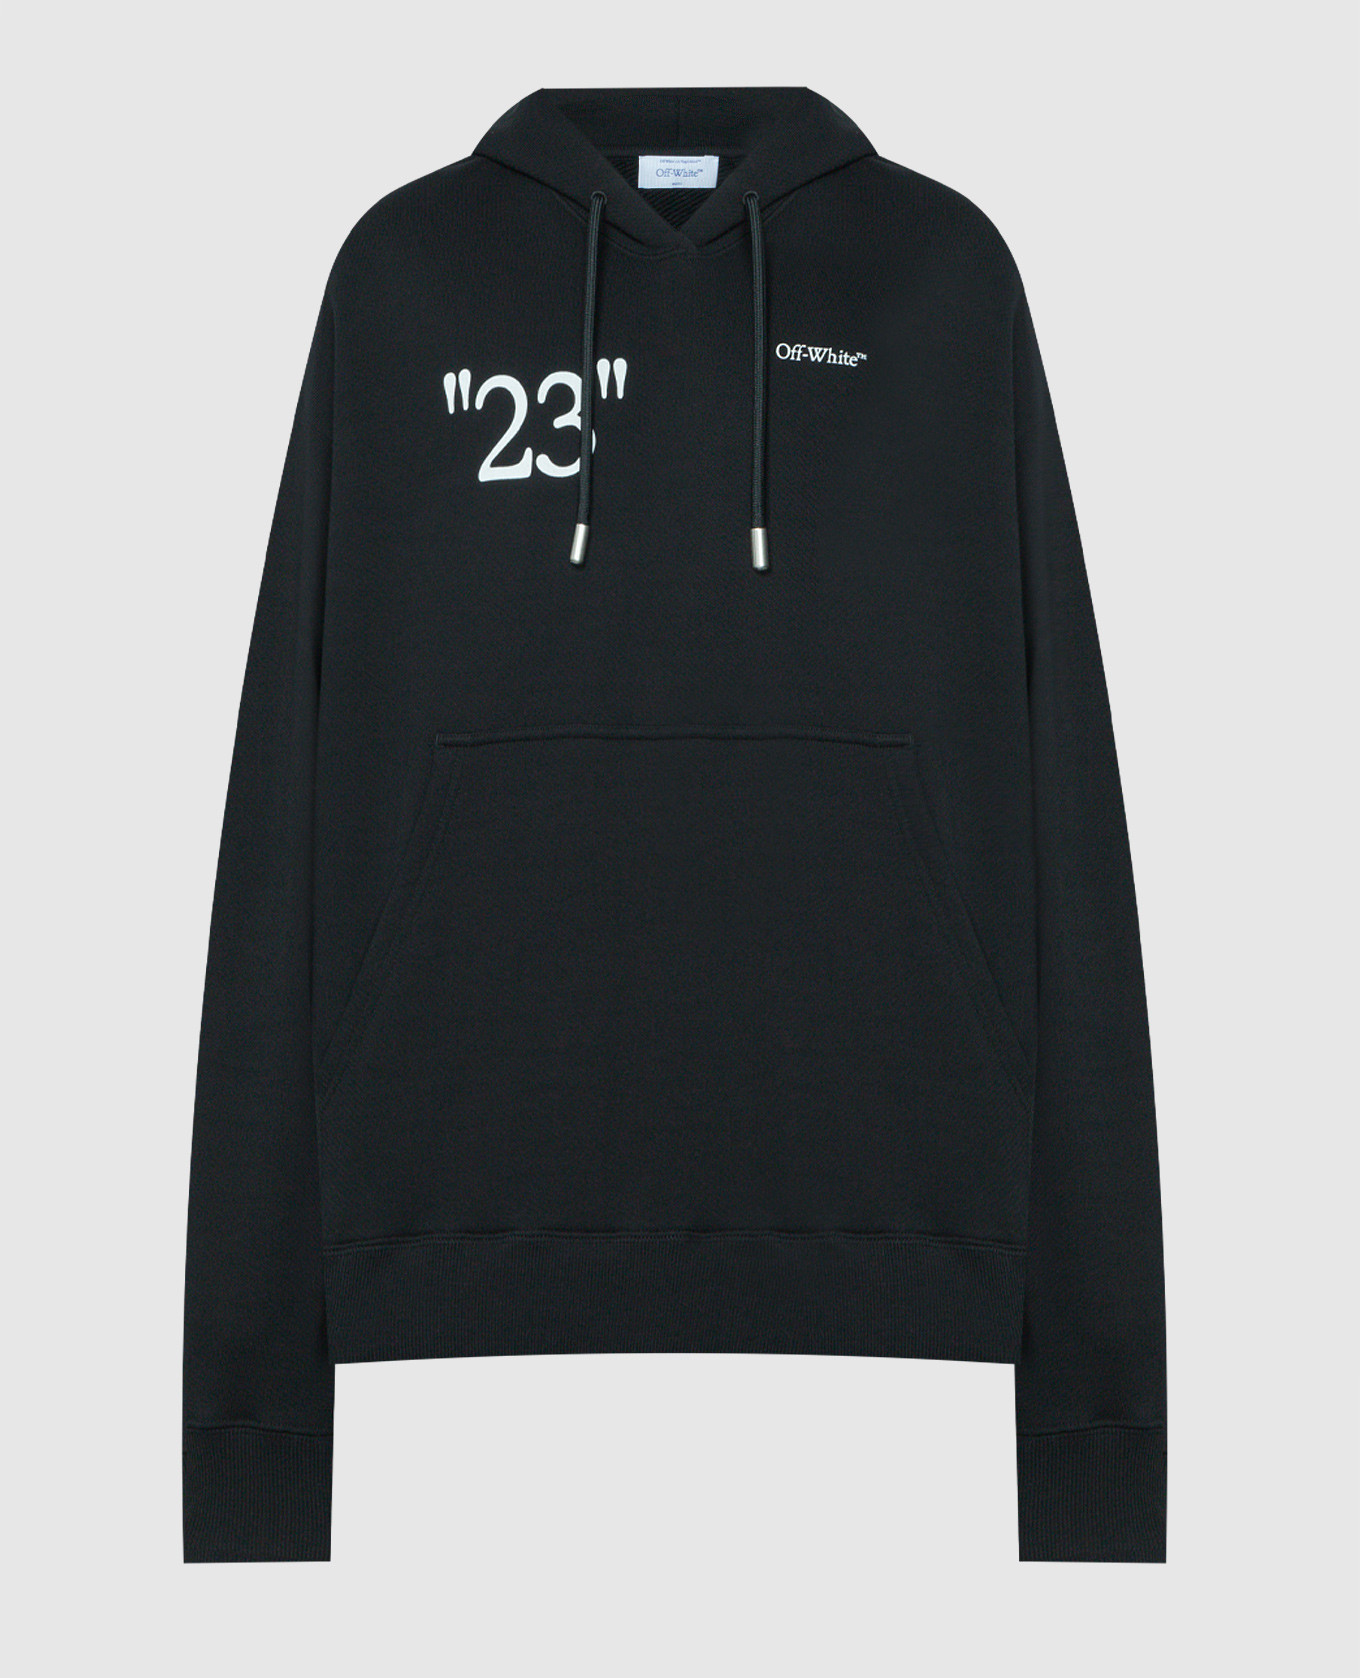 Black hoodie with 23 logo print